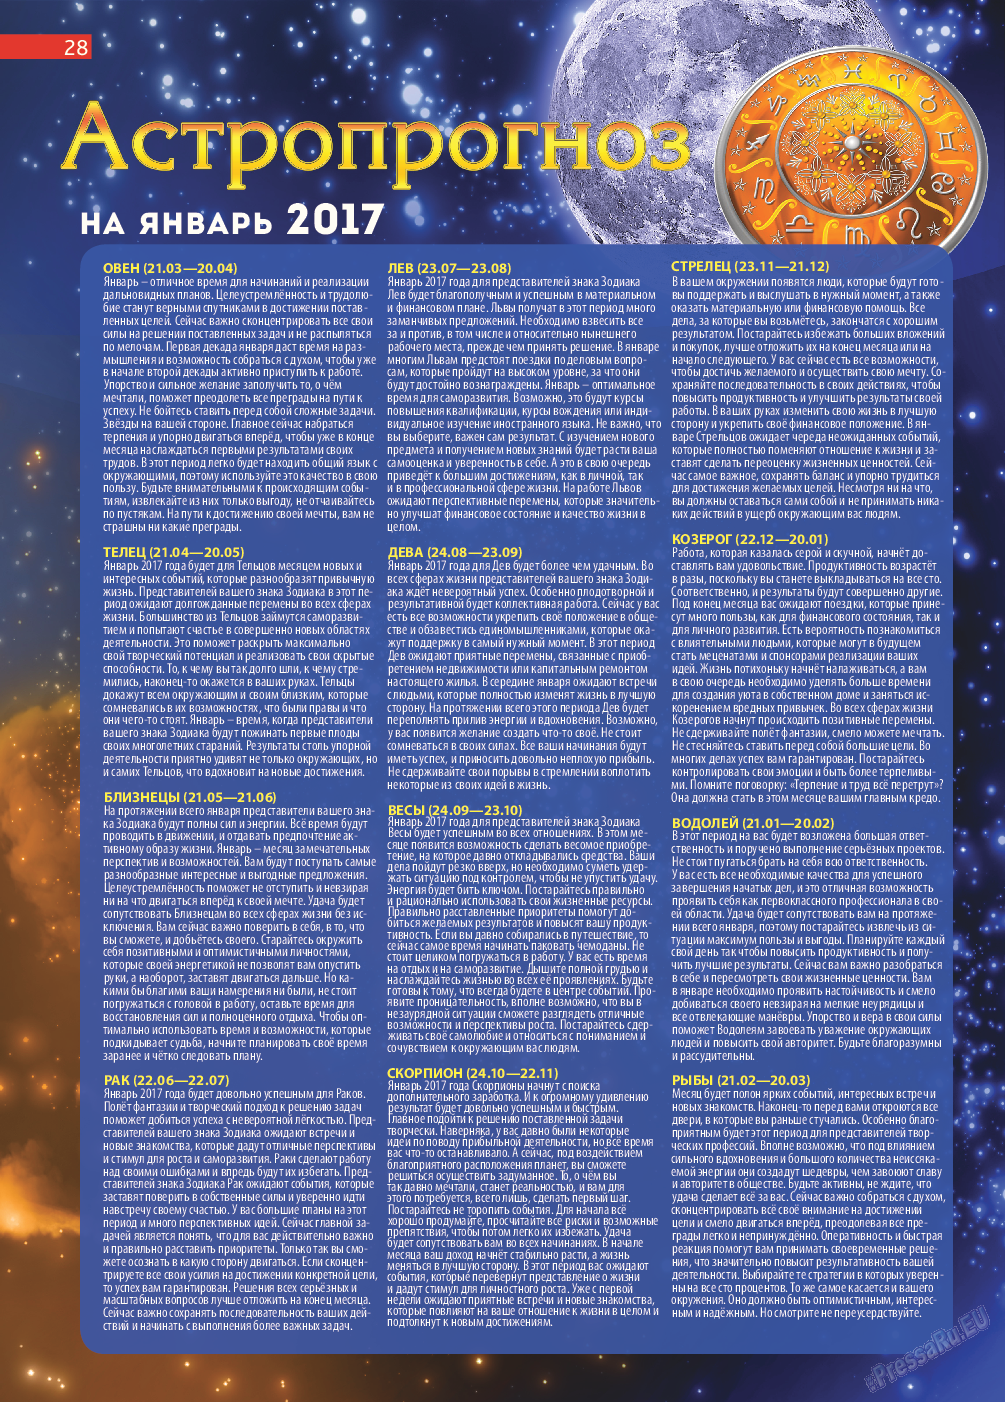 Афиша Augsburg (журнал). 2017 год, номер 1, стр. 28